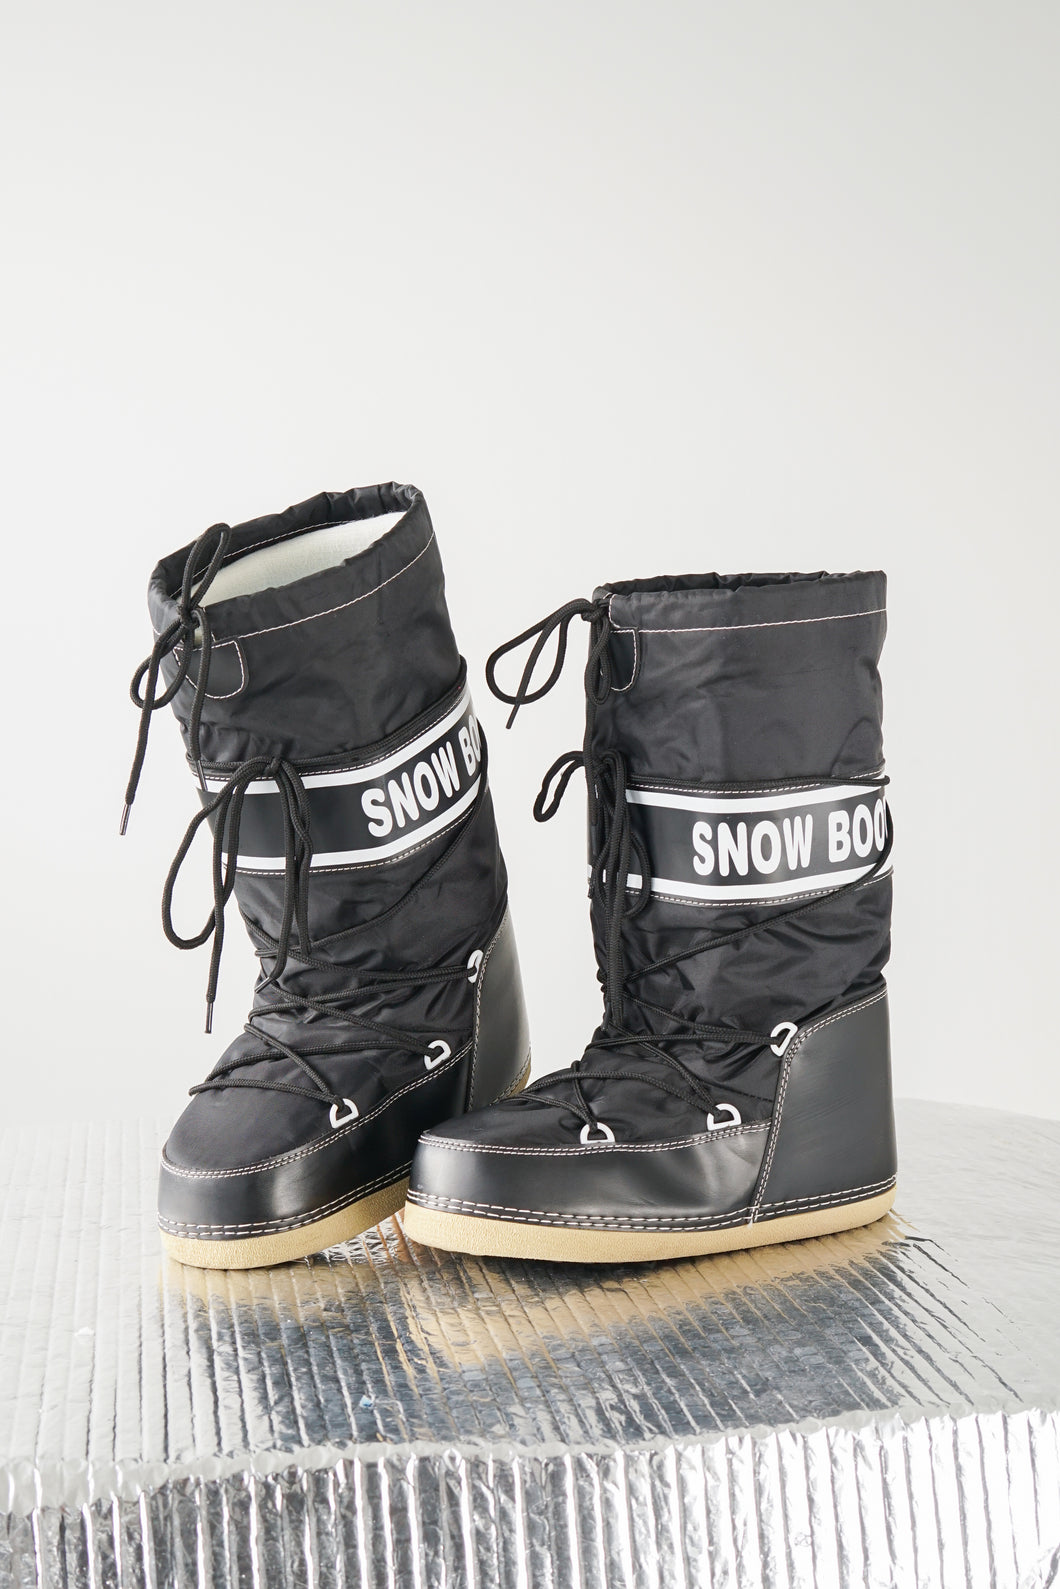 Moonboots Snow Boot nylon noir taille 41-43